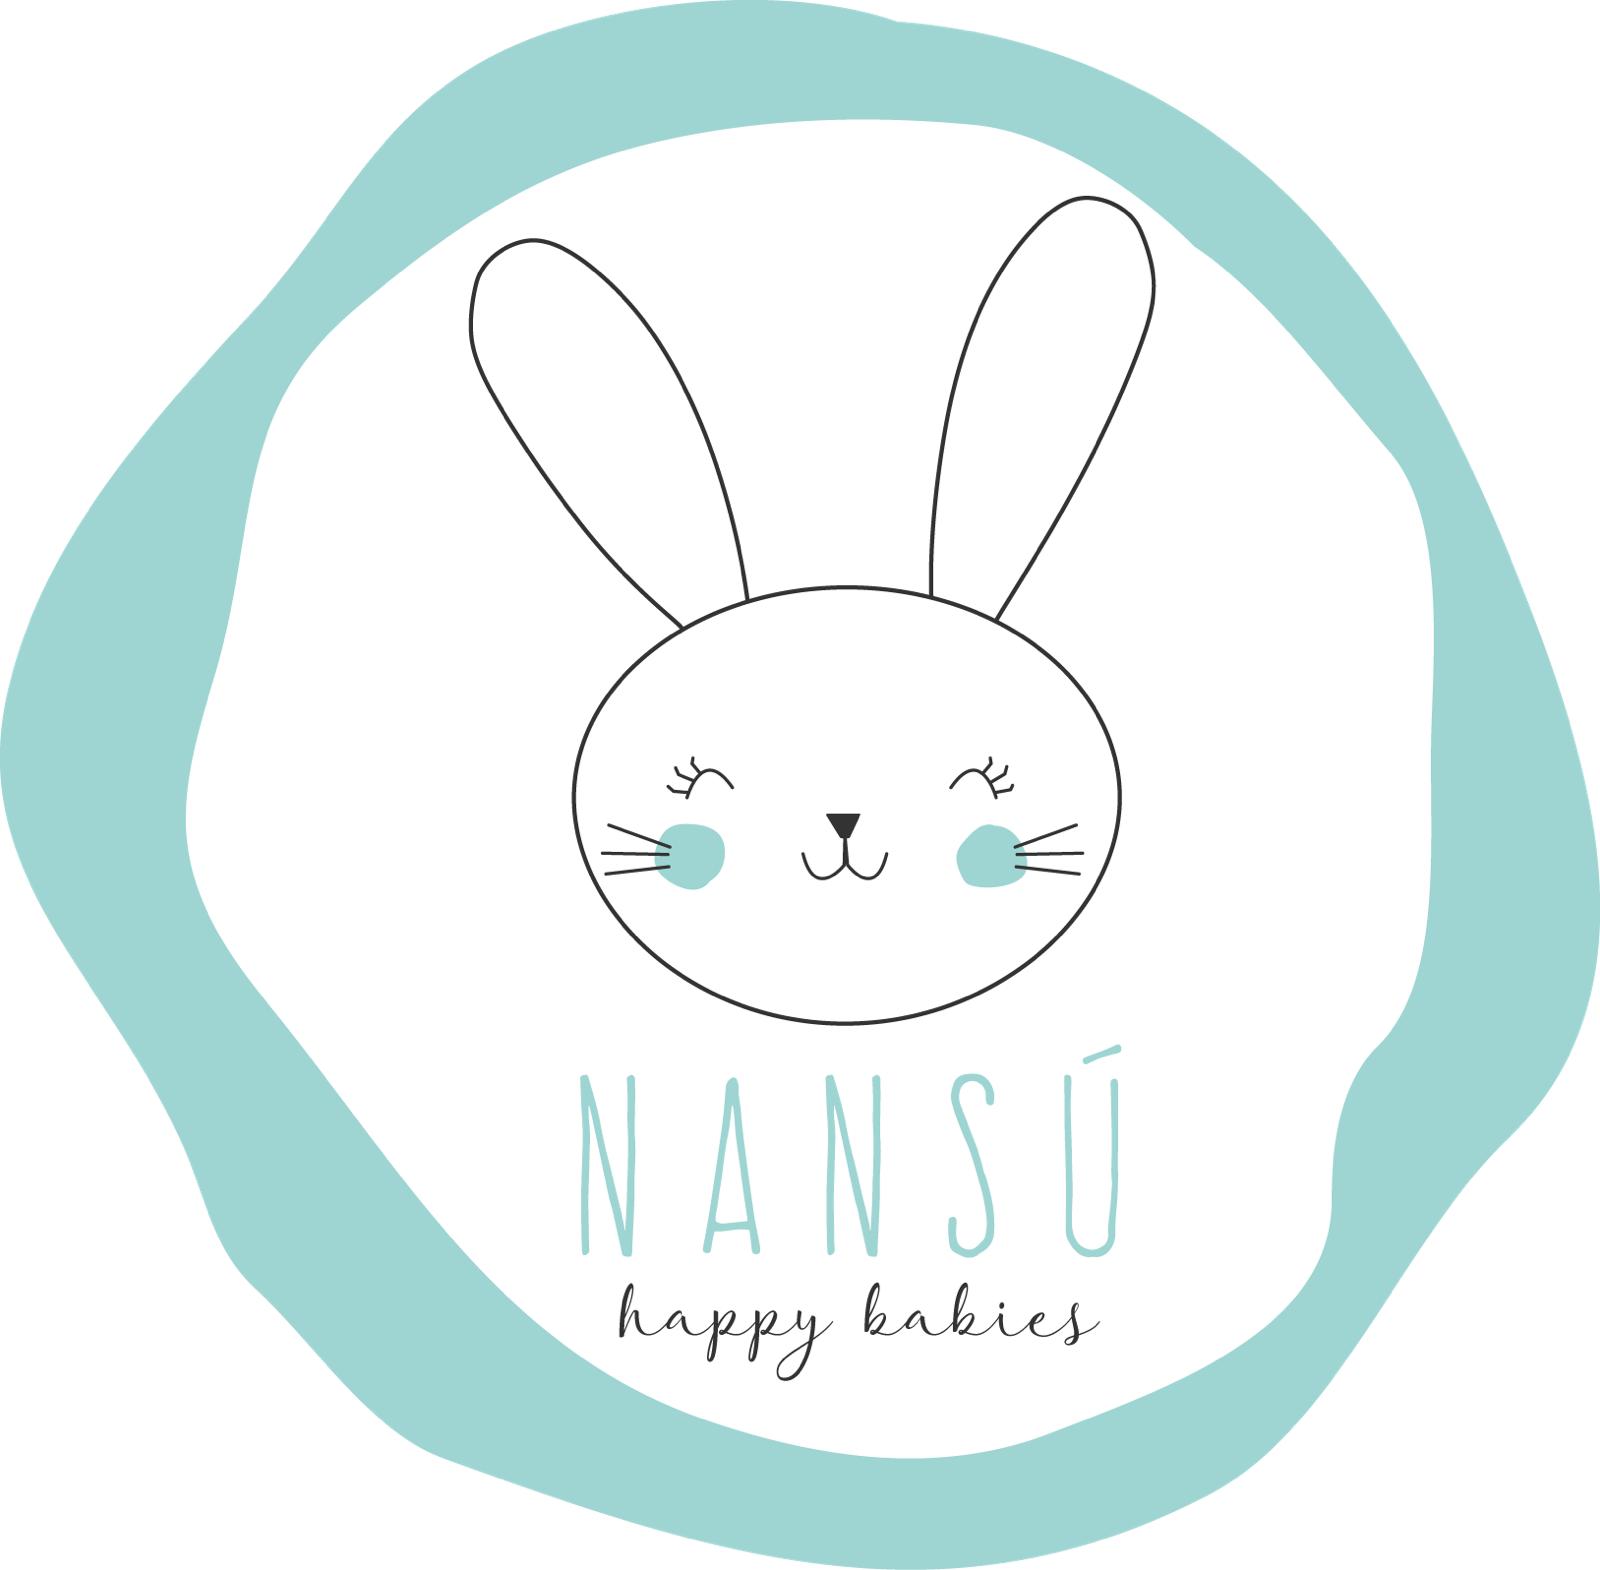 Nansu